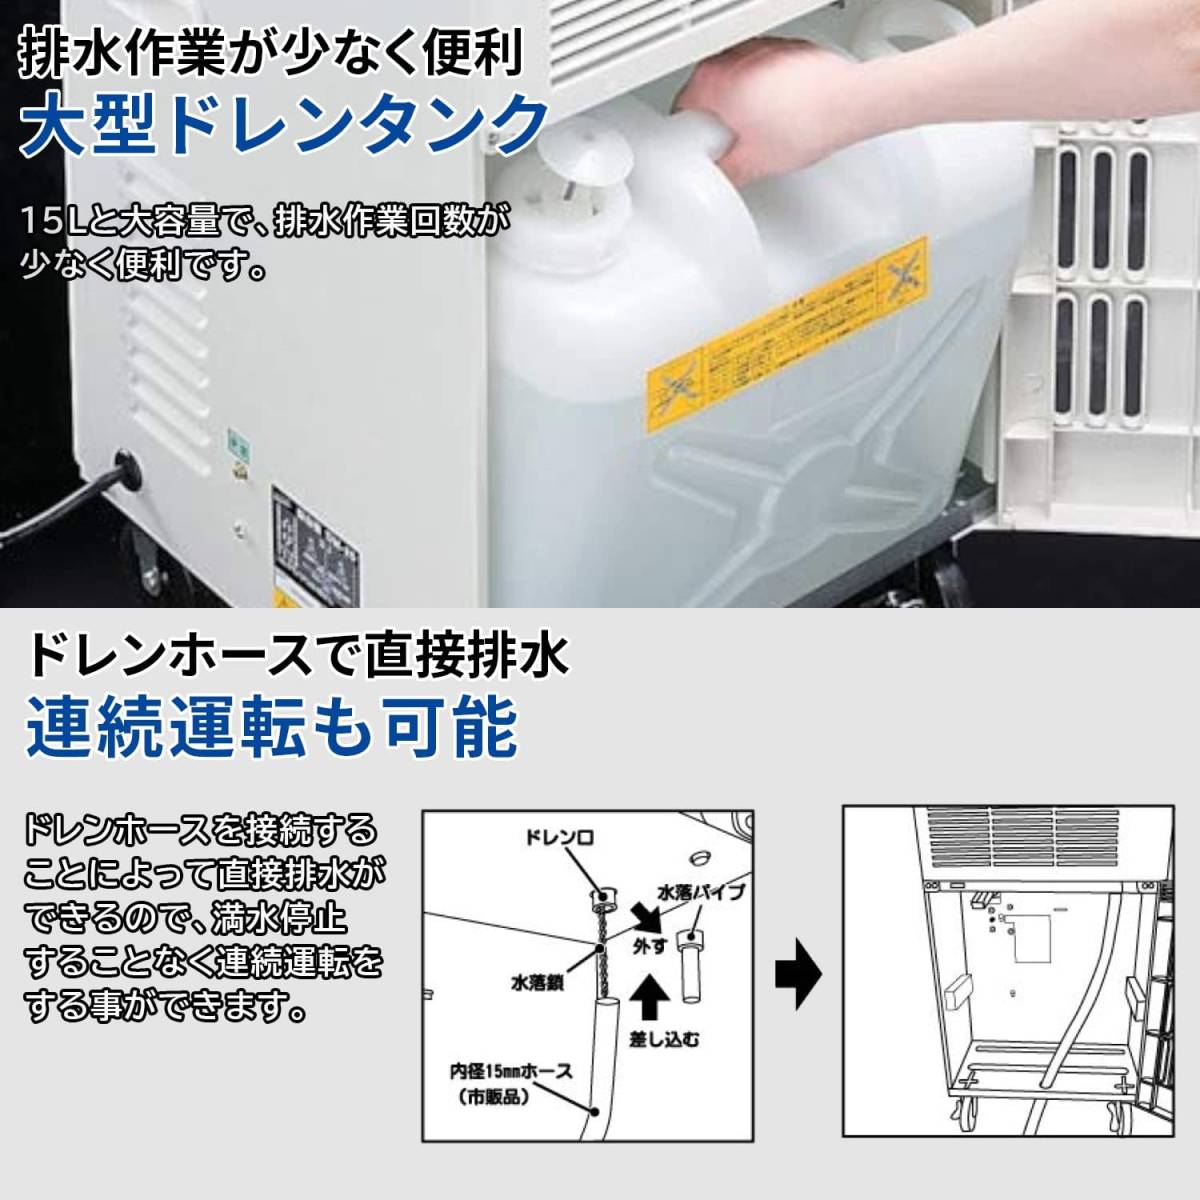 nakatomi(Nakatomi)nakatomi для бизнеса осушитель сушильная машина DM-15